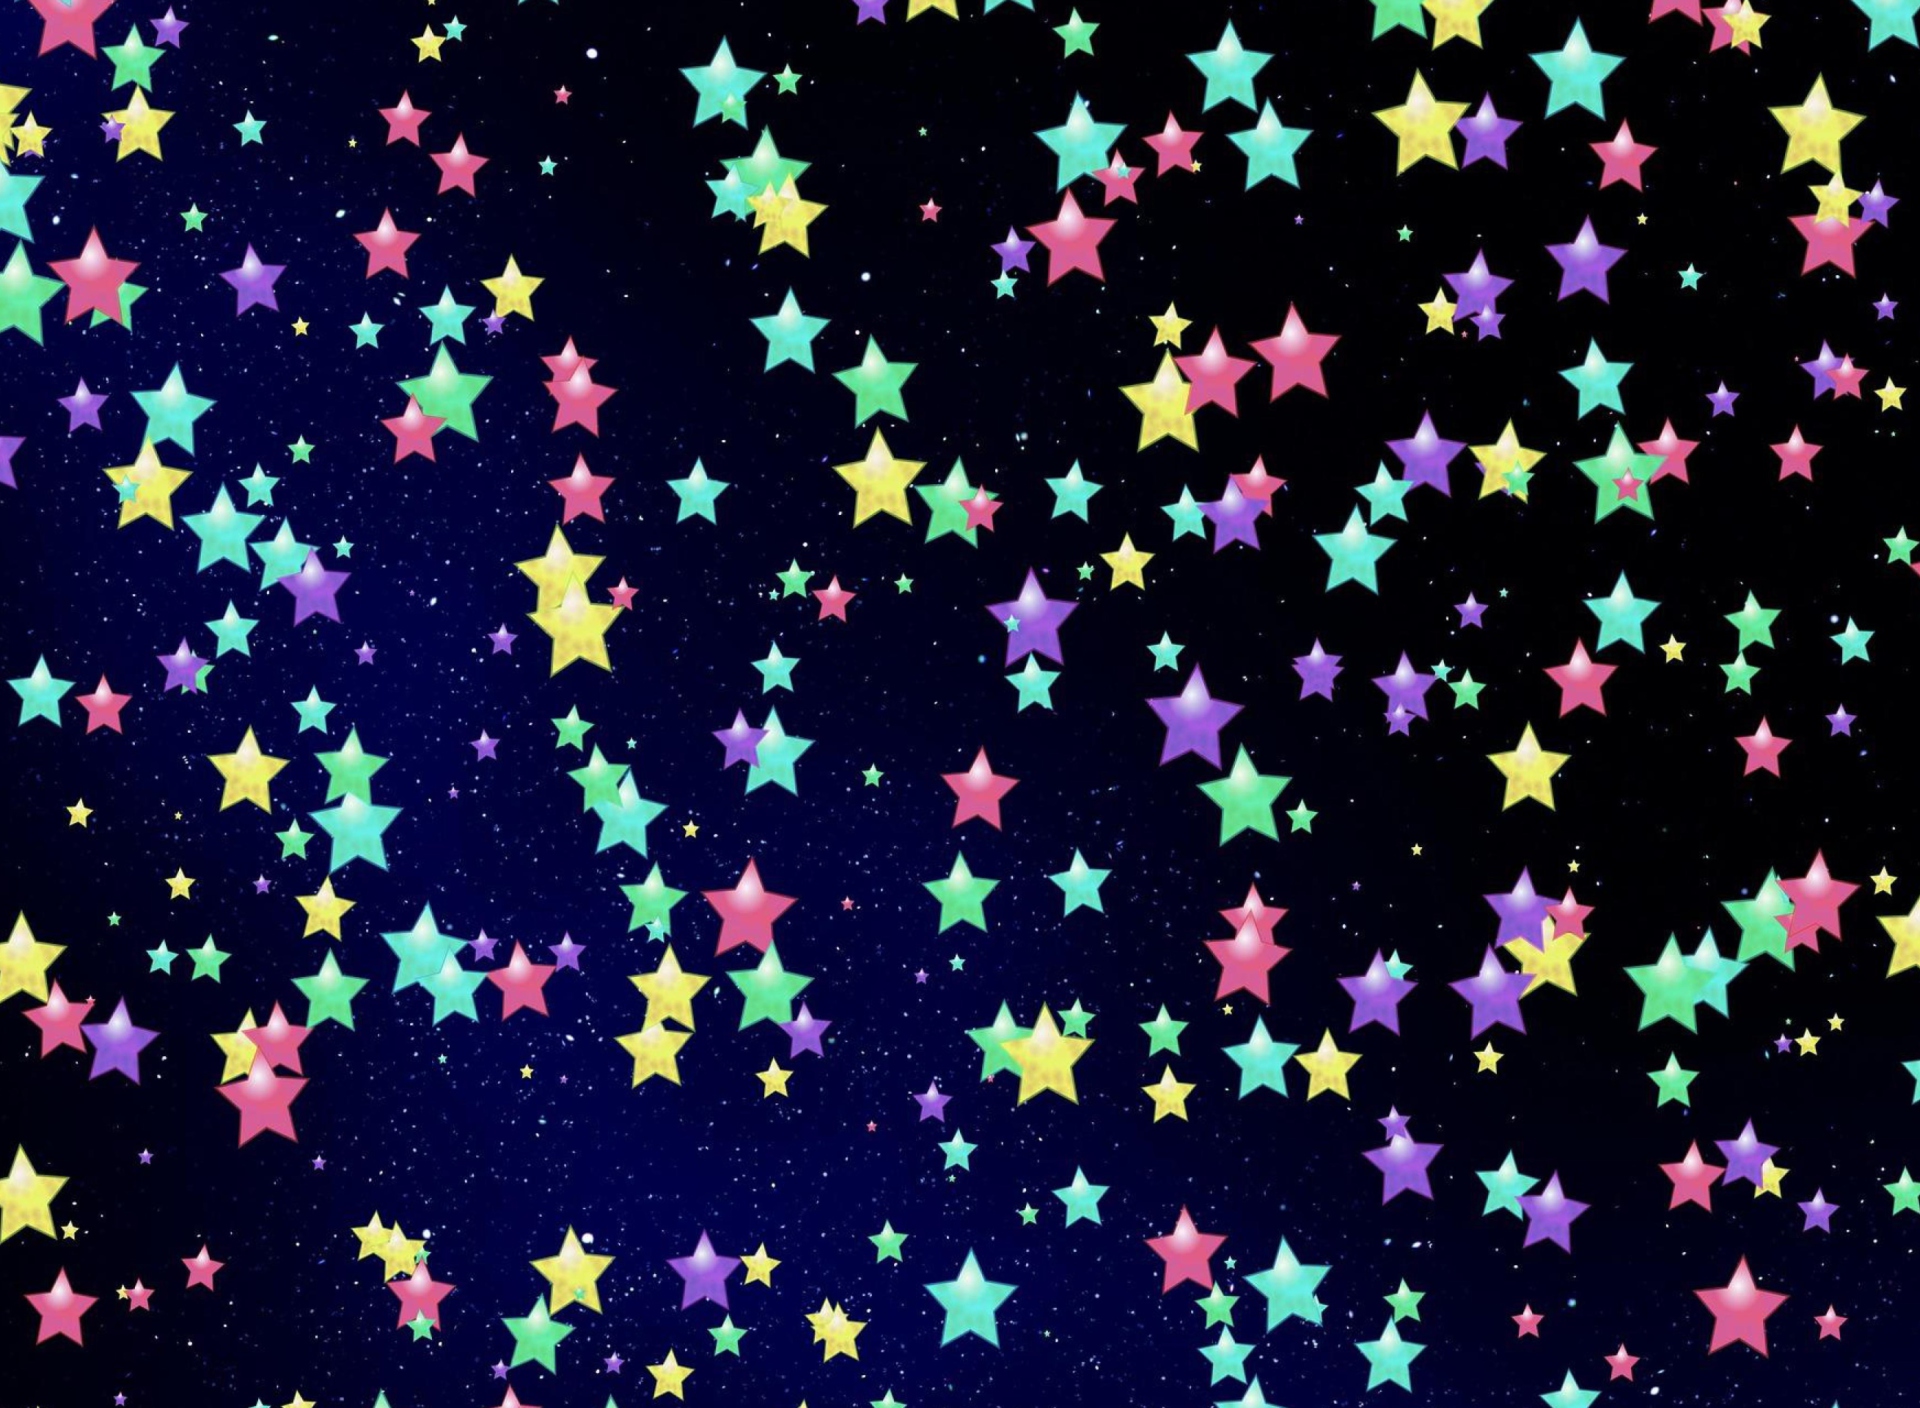 Das Colorful Stars Wallpaper 1920x1408